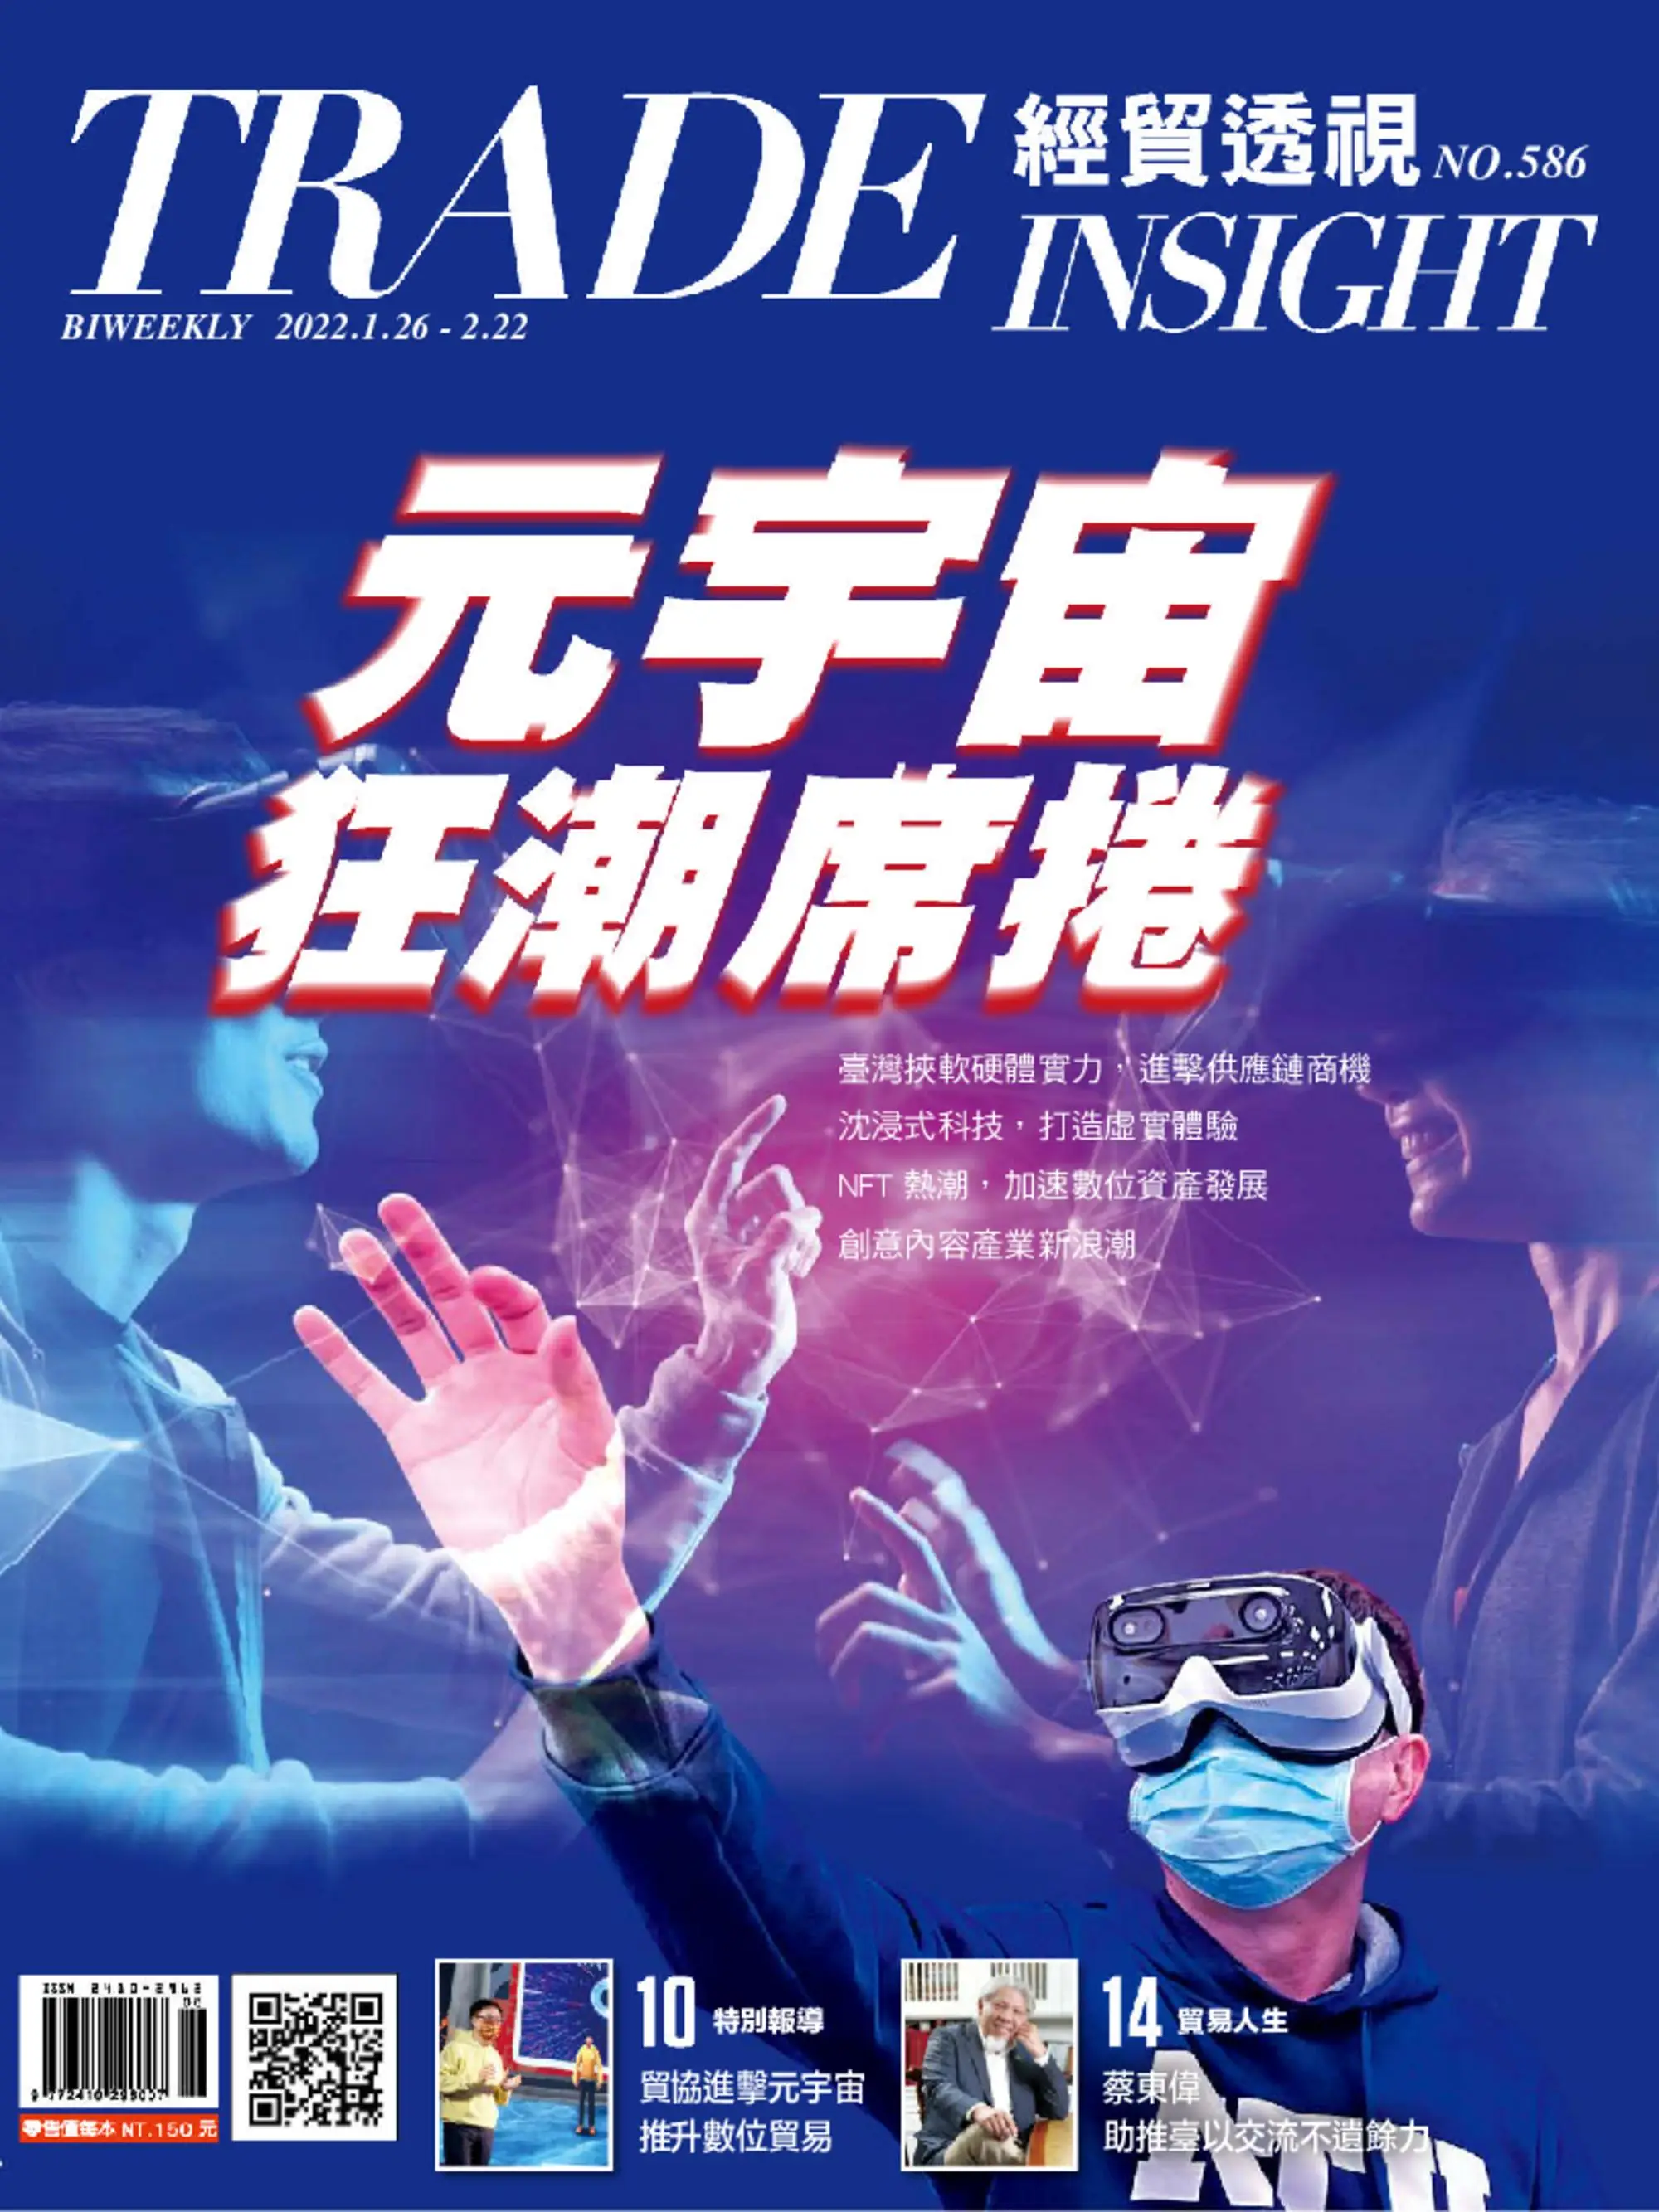 Trade Insight Biweekly 經貿透視雙周刊 - 一月 26, 2022